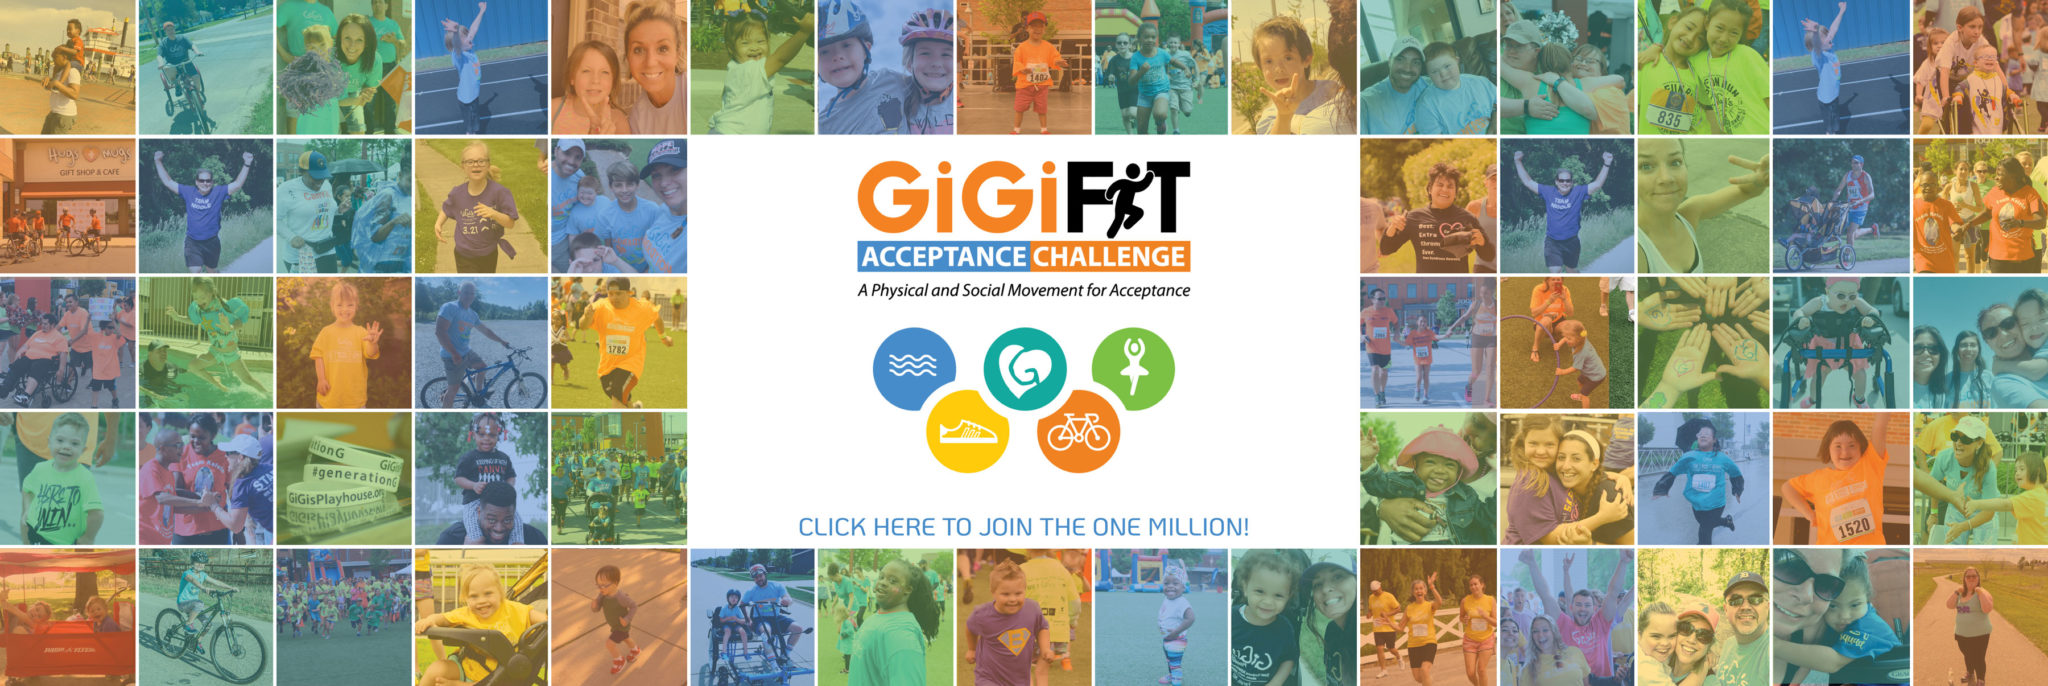 GiGiFIT-Banner-Website